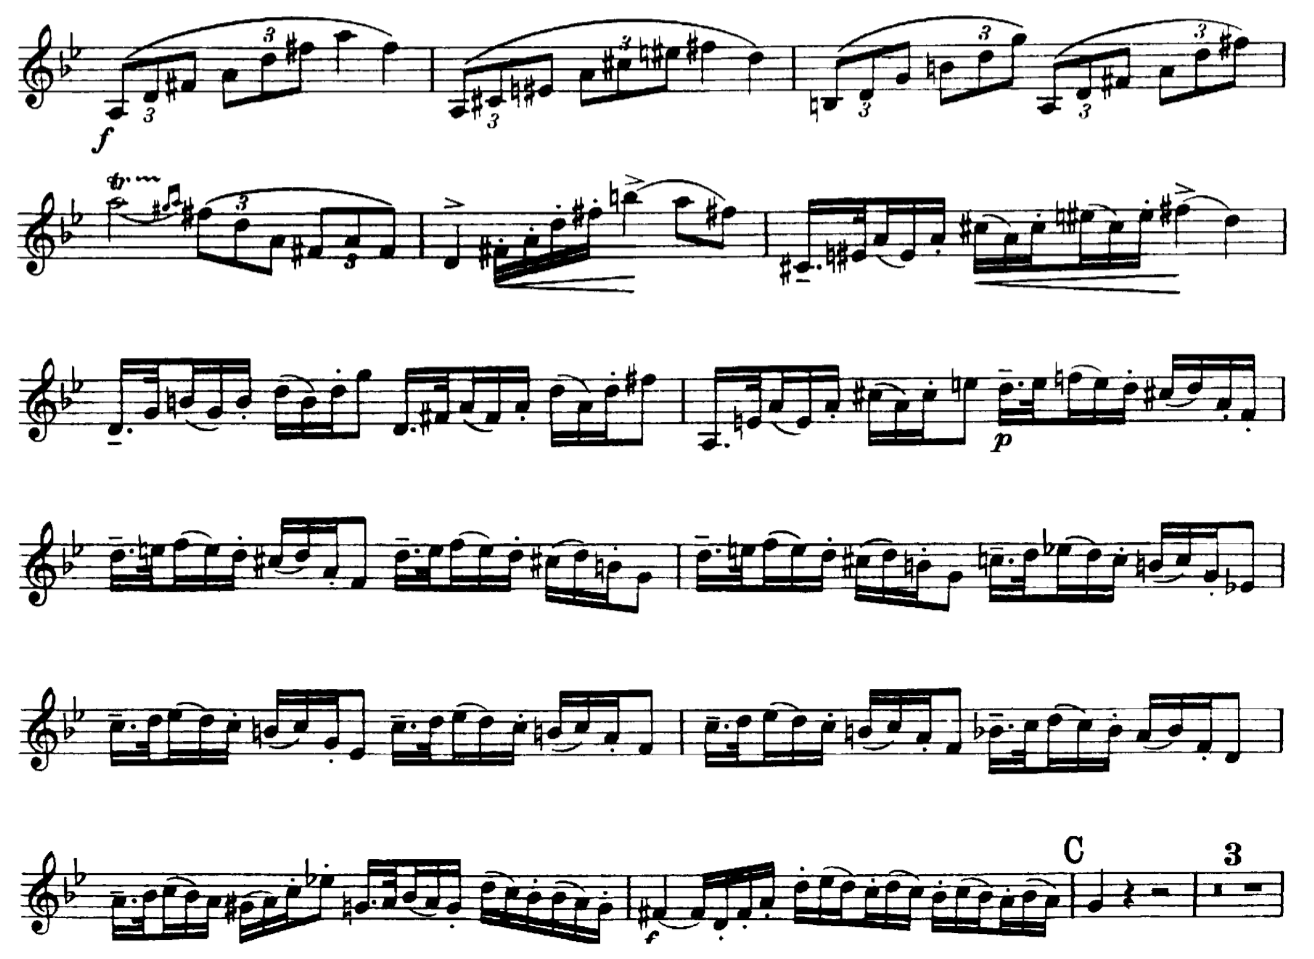 I denna sektion används ett helt annat material och det kan mestadels inte tolkas som melodiskt, eftersom det är ett arpeggio-ostinato motiv.